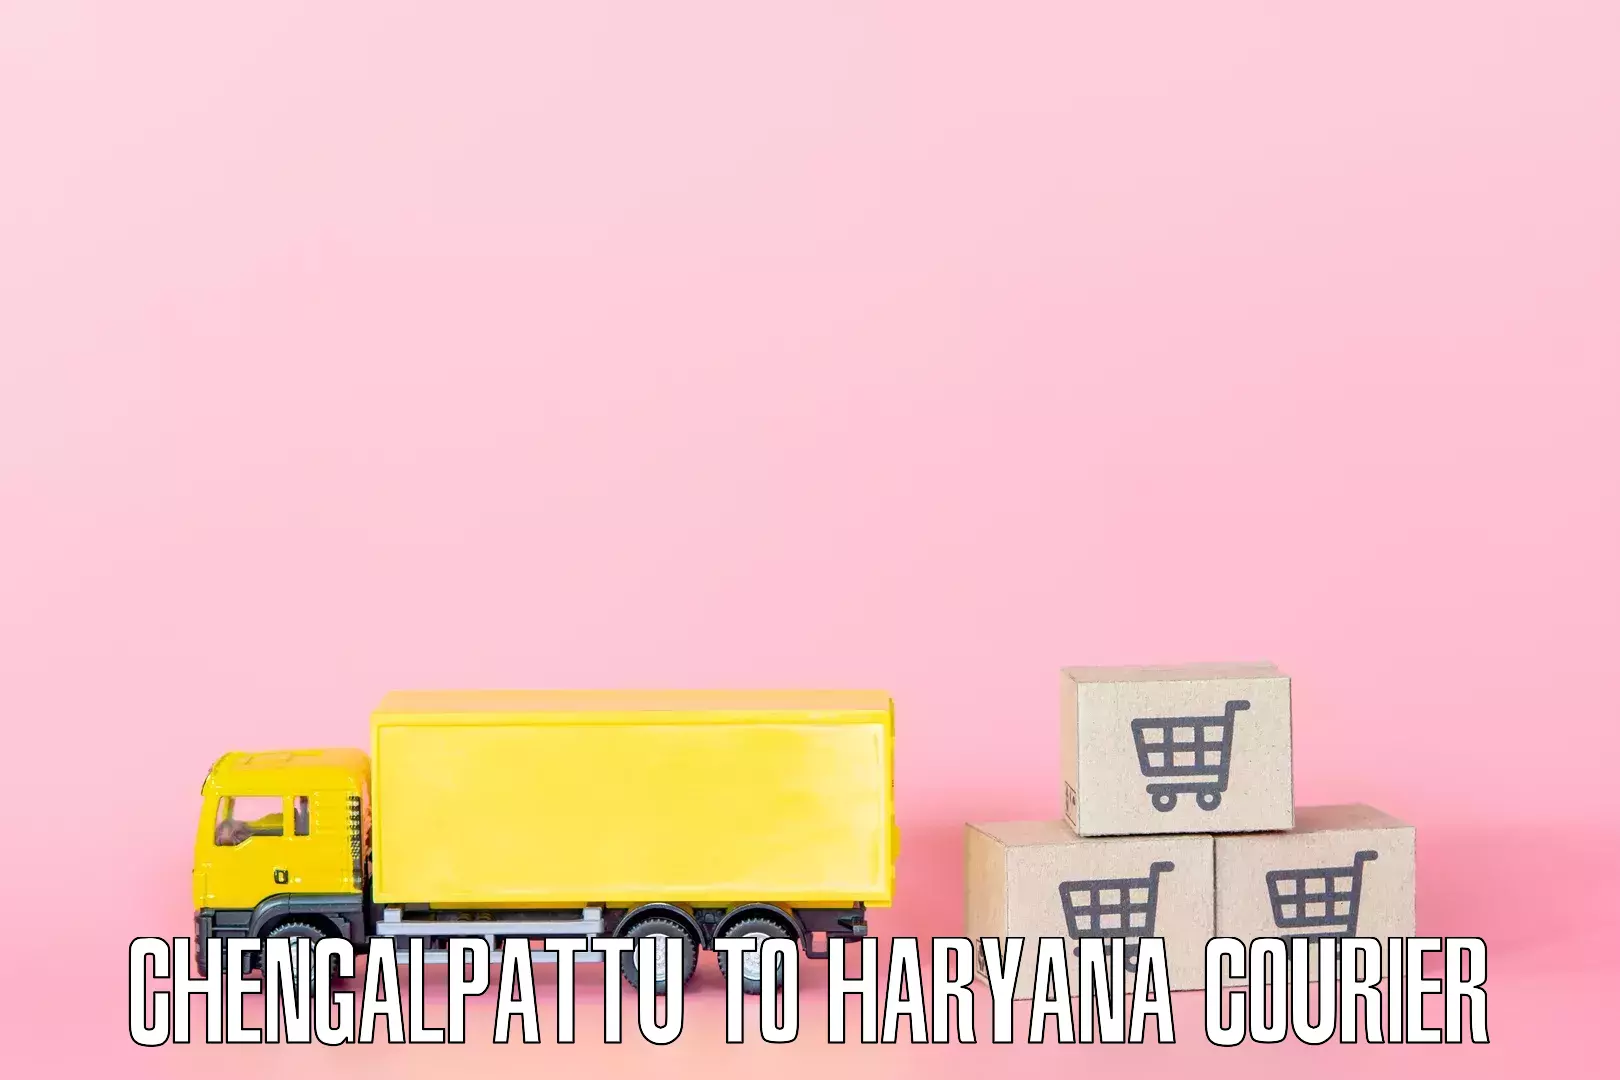 Furniture moving plans Chengalpattu to Haryana